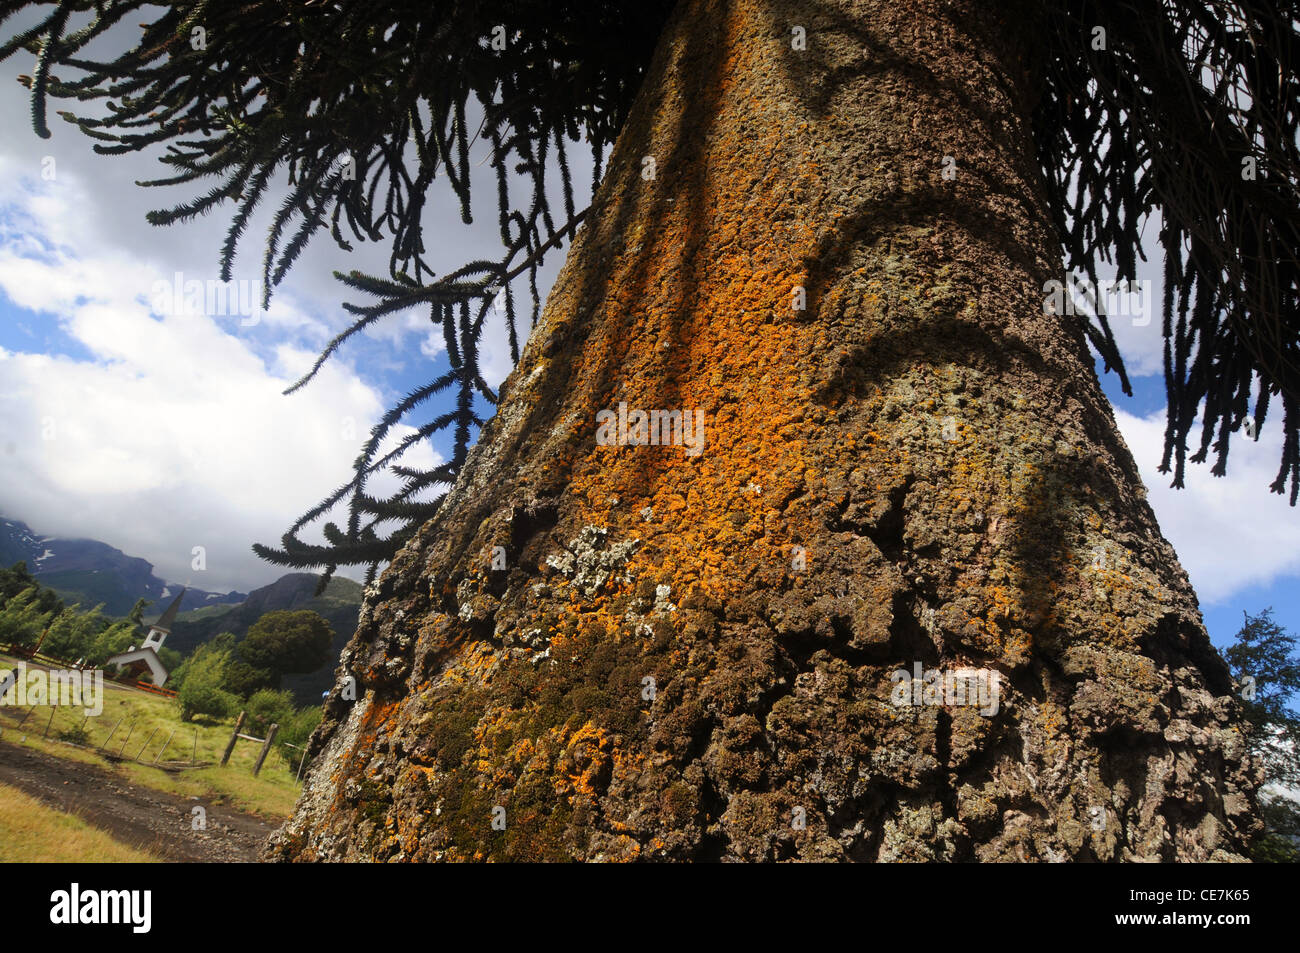 Arbre généalogique monkey puzzle (Araucaria araucana) à l'avant de la petite église à Paimun, Parc National Lanin, Neuquen, Argentine Banque D'Images